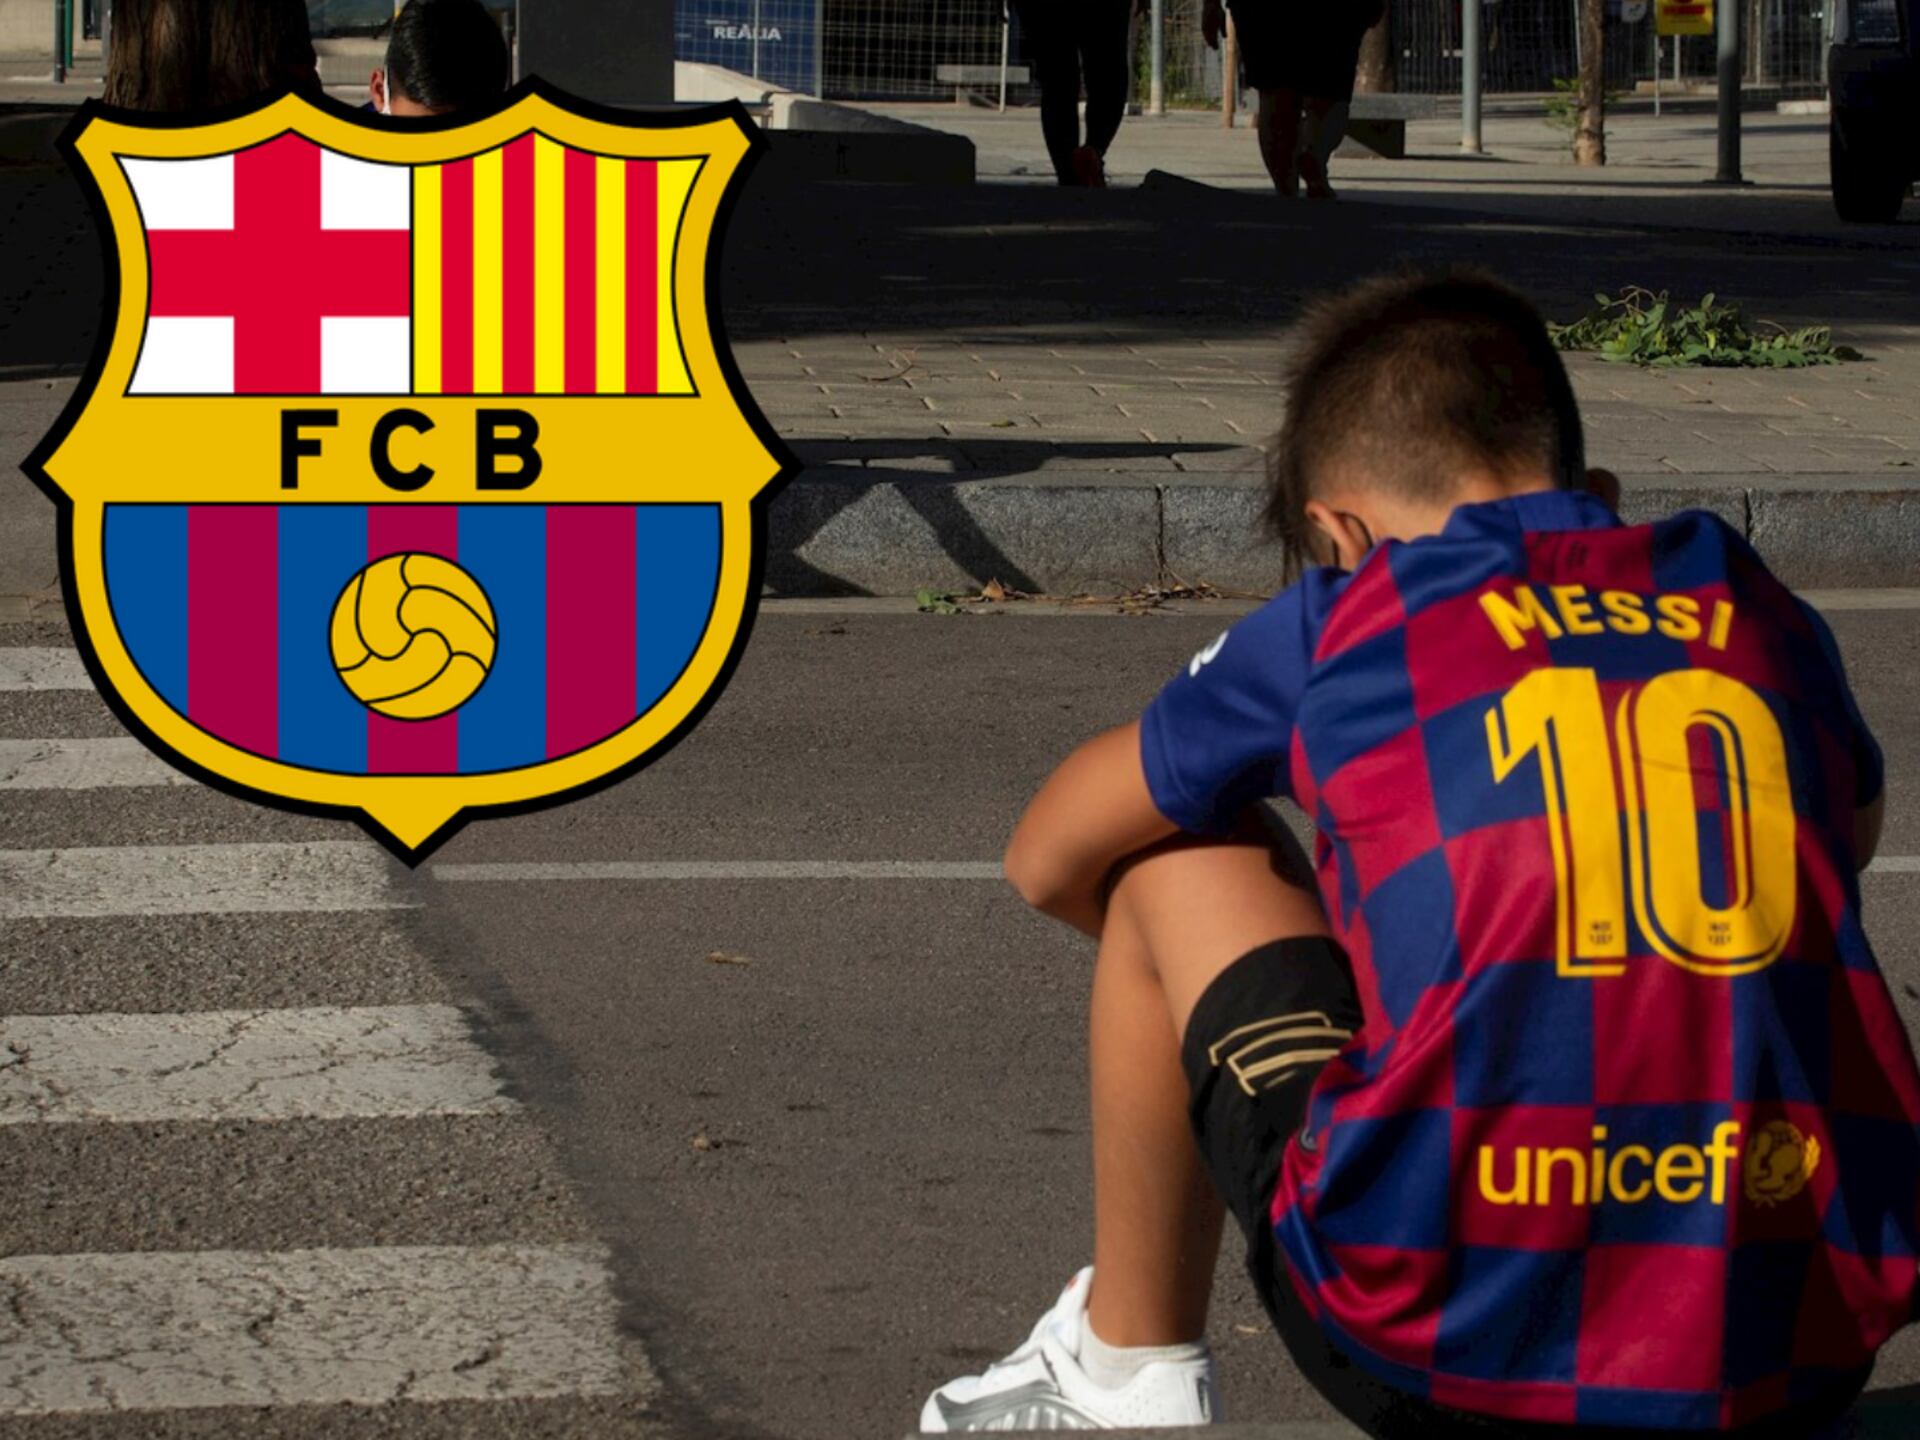 El Barcelona está al límite y podría sufrir un cambio drástico